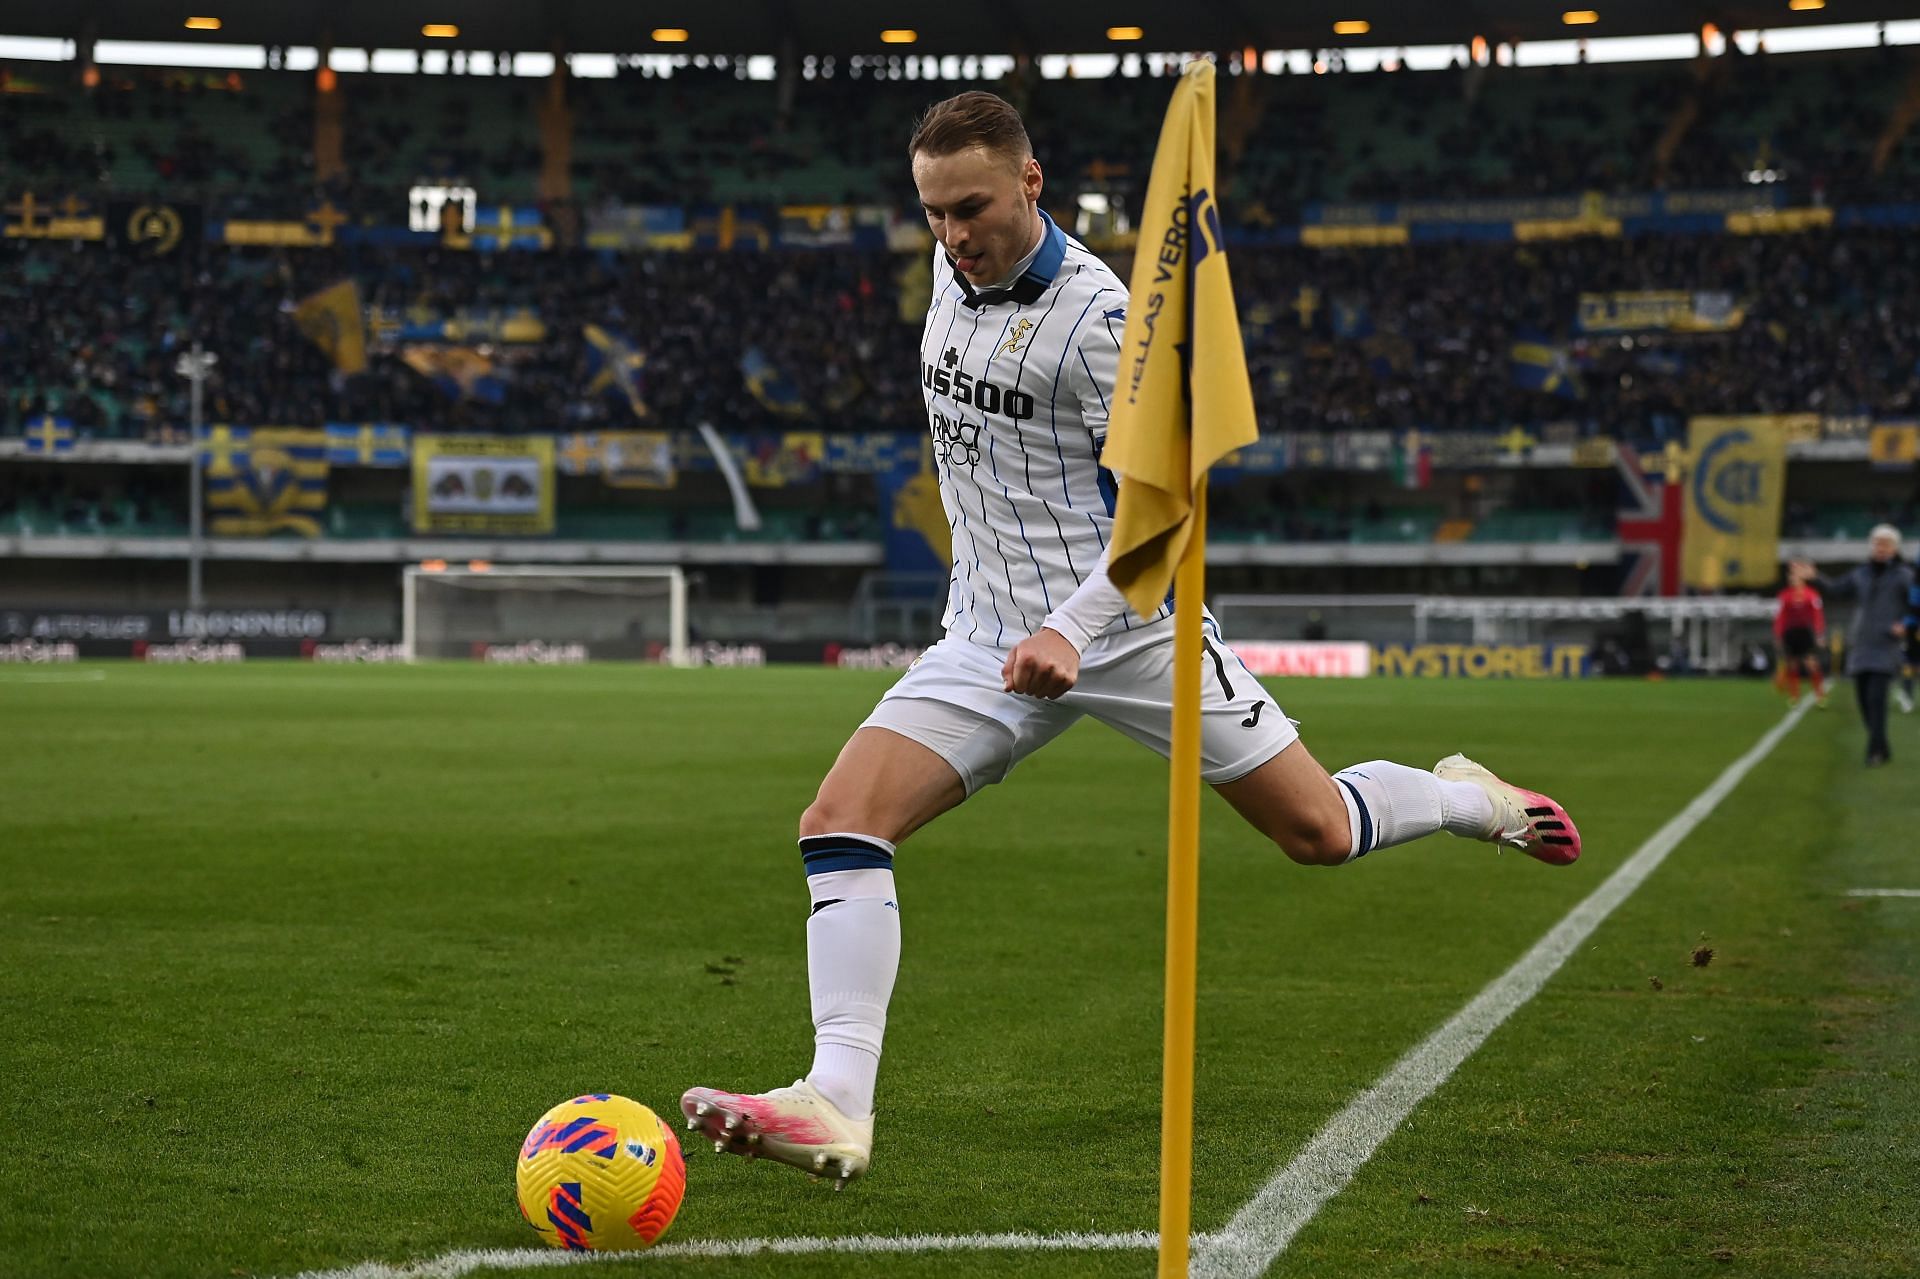 Atalanta play Torino on Thursday in Serie A